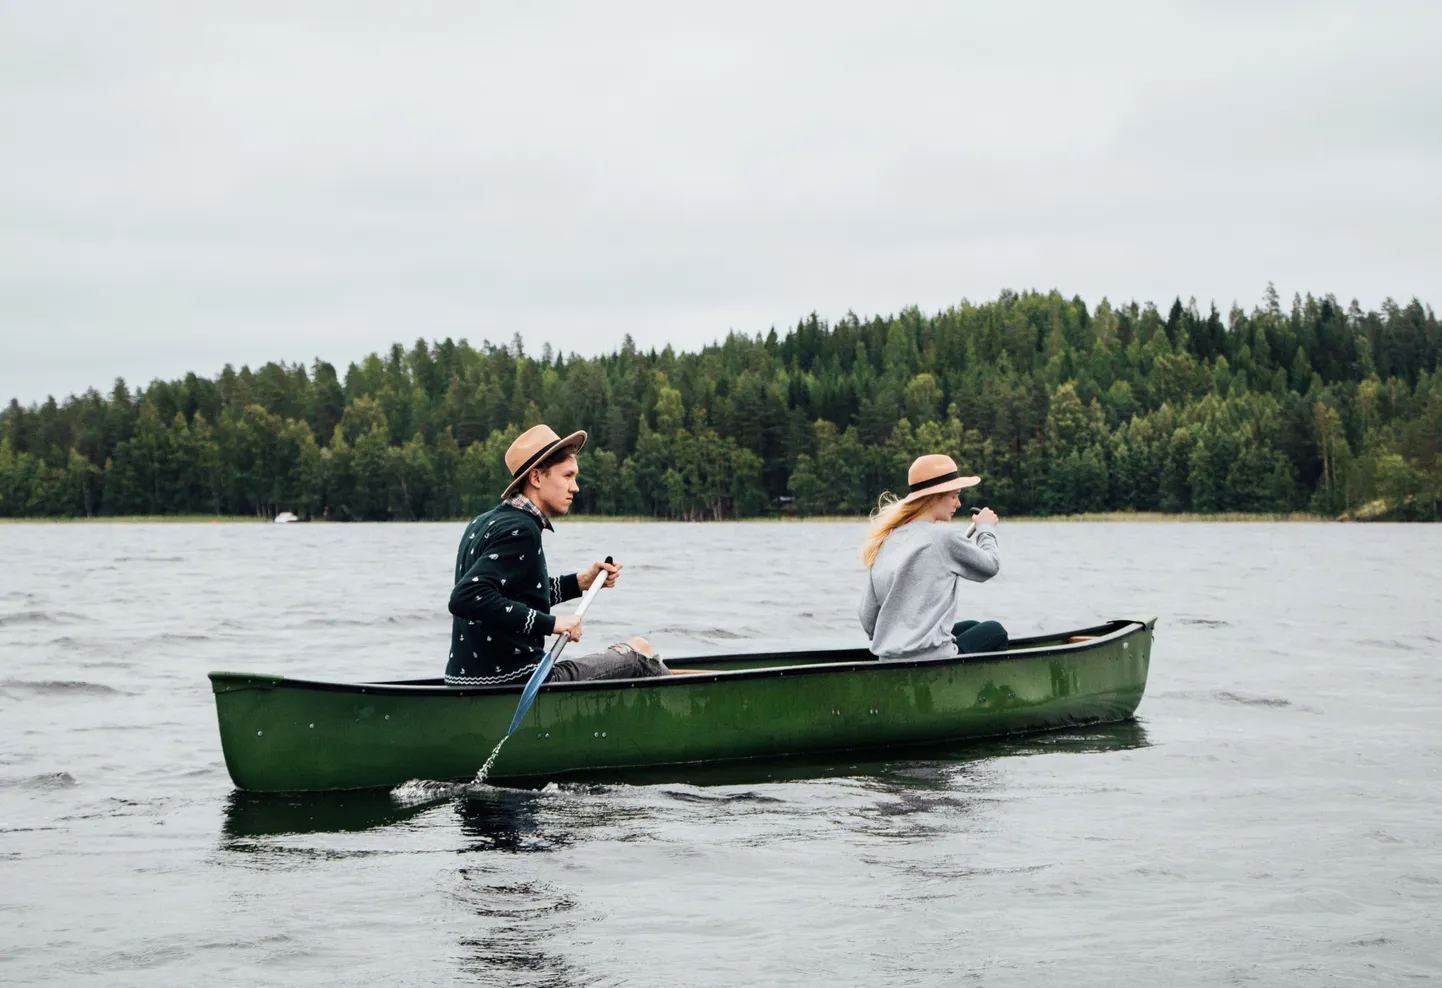 Soome 100: Saimaa saarestikus aerutamas